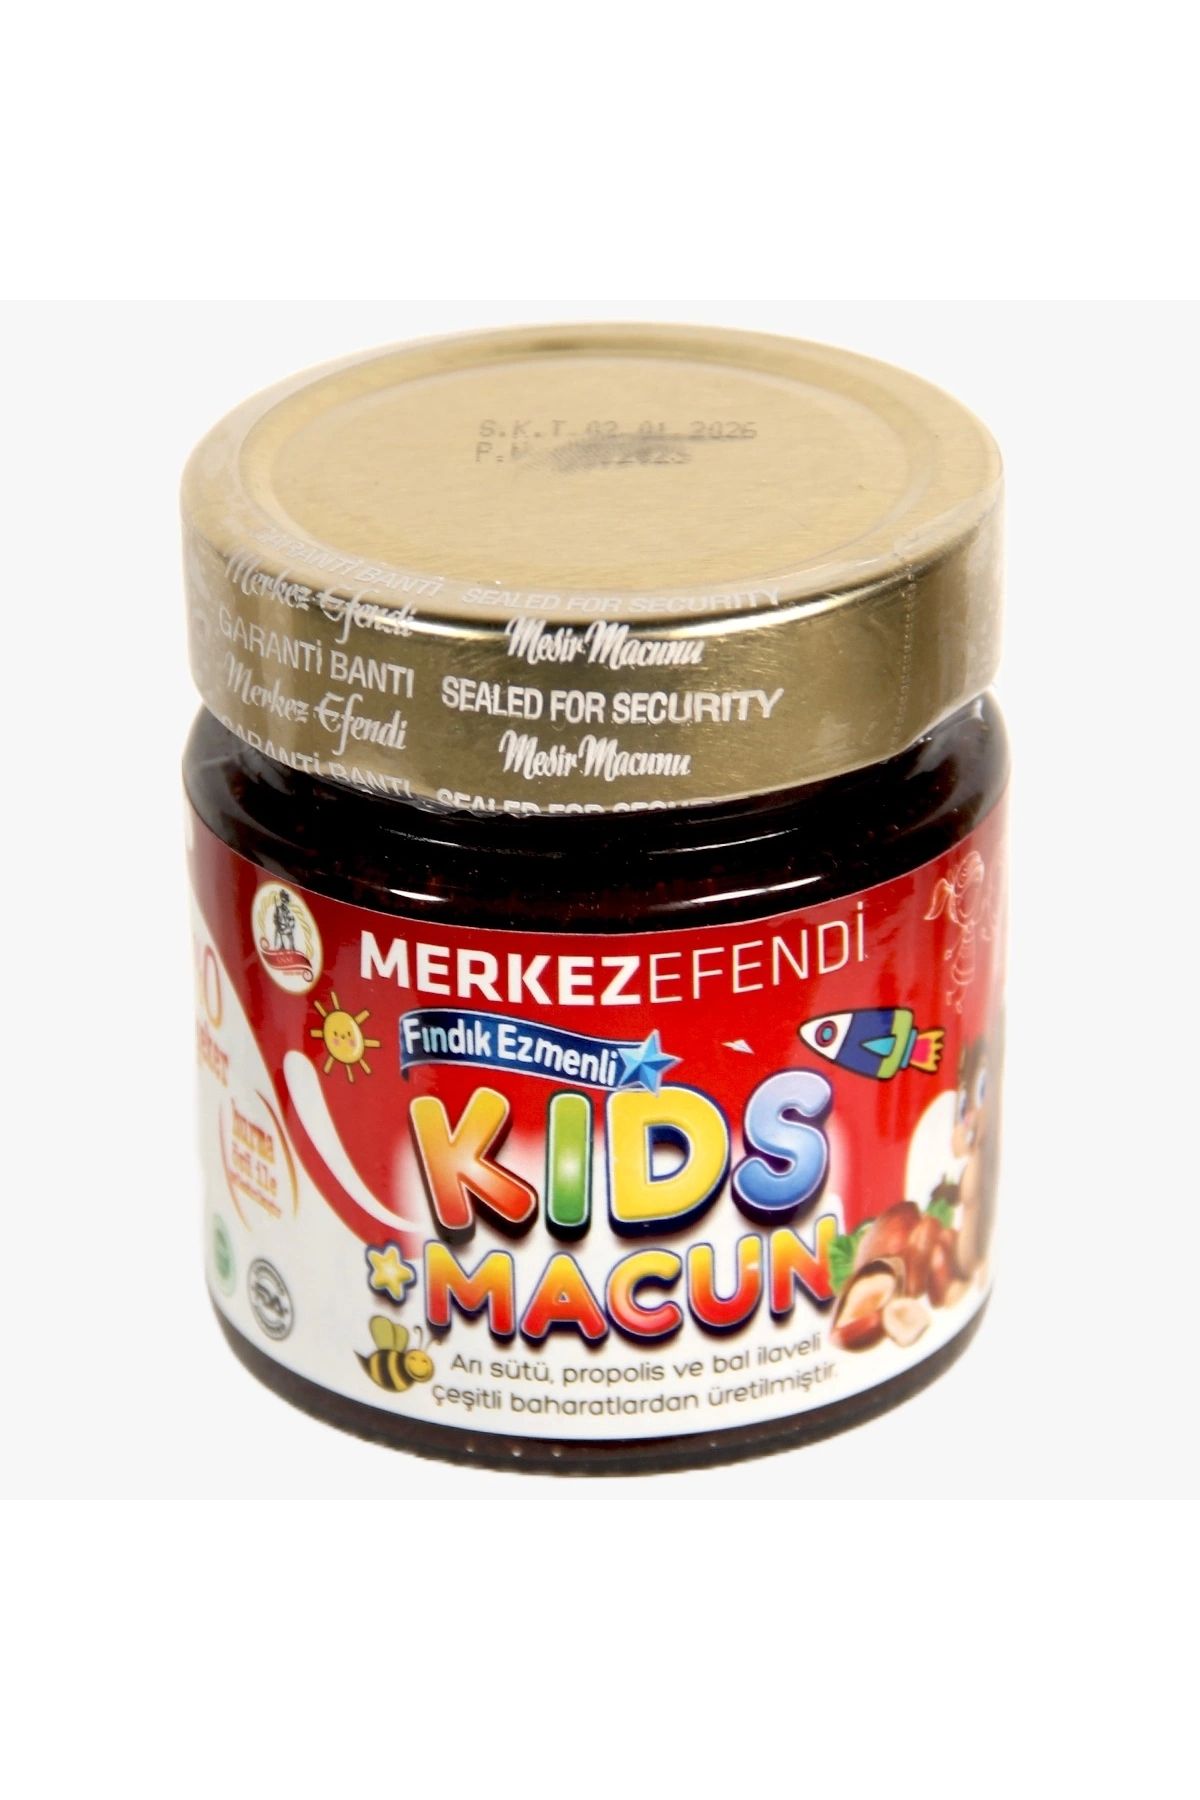 Merkez Efendi Merkezefendi Kids Çocuklar Için Özel - Arı Sütü,, Bal Ve Vitamin Katkılı Fındık Ezmeli Macun